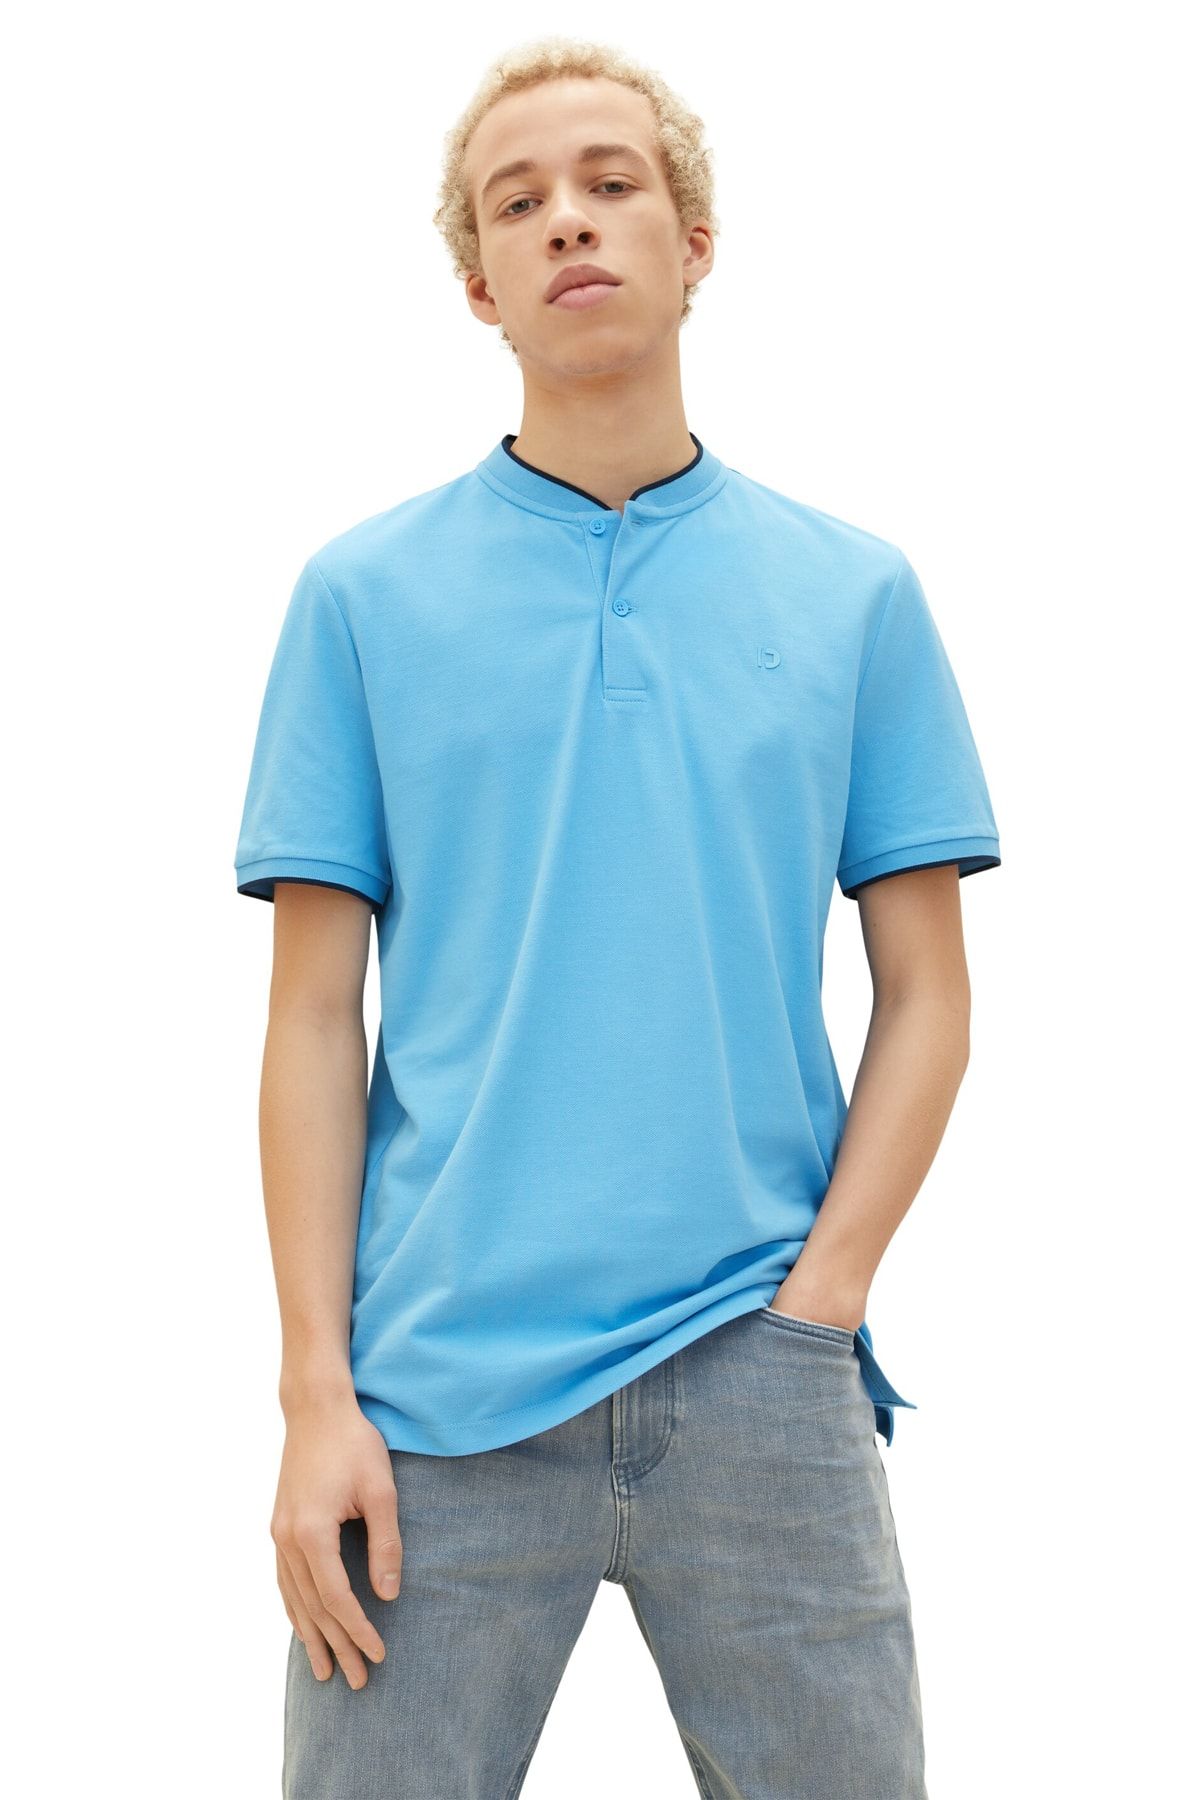 Tom Tailor Denim Polo T-shirt - Blue - Regular fit - Trendyol